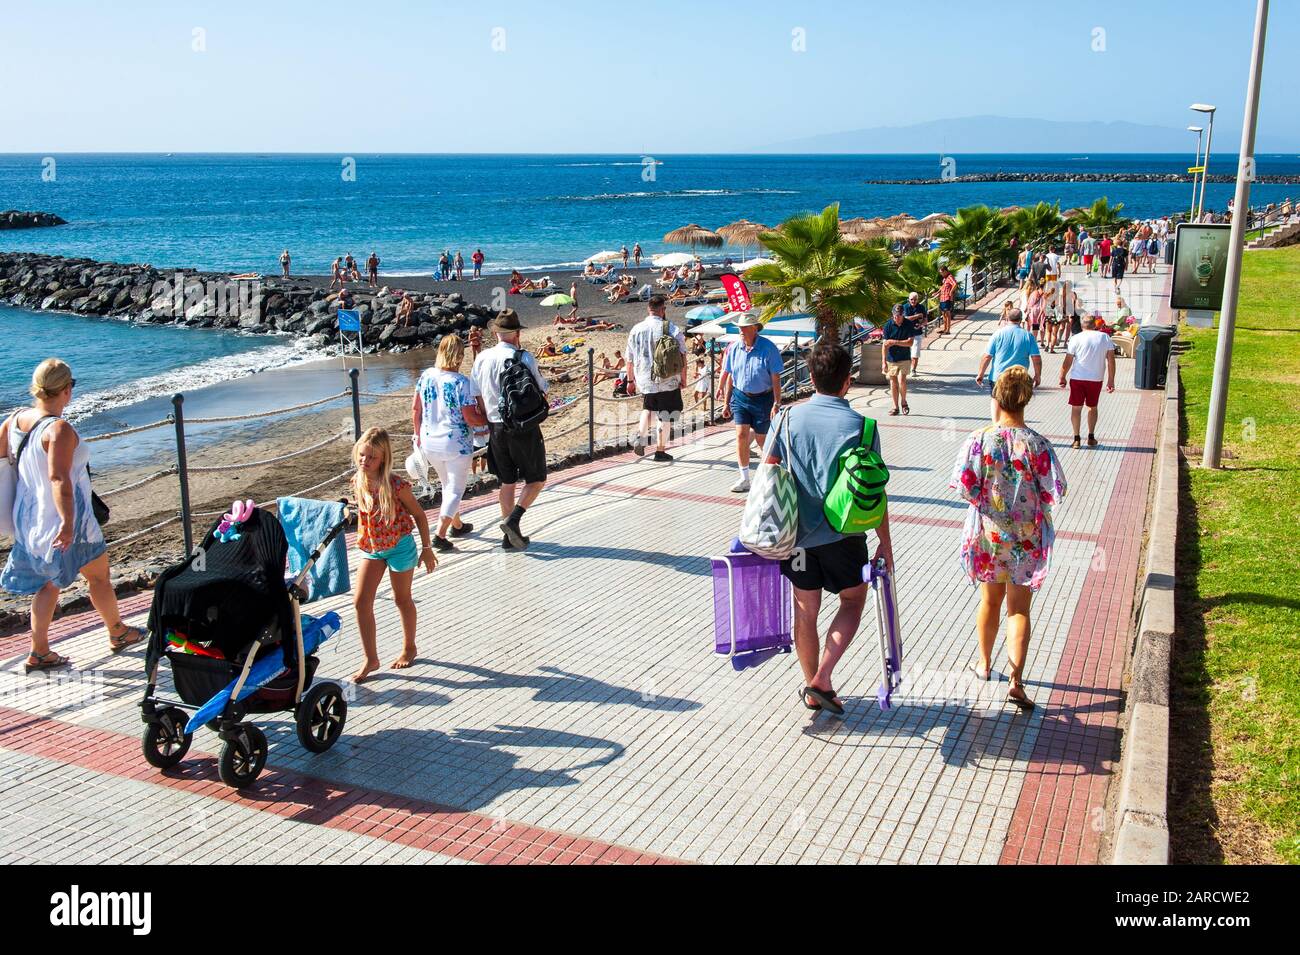 Île des Canaries TENERIFE, ESPAGNE - 27 DEC, 2019: Les touristes marchant sur la promenade le long de Playa El Duque. C'est l'une des plages les plus populaires de Tenerife. Banque D'Images